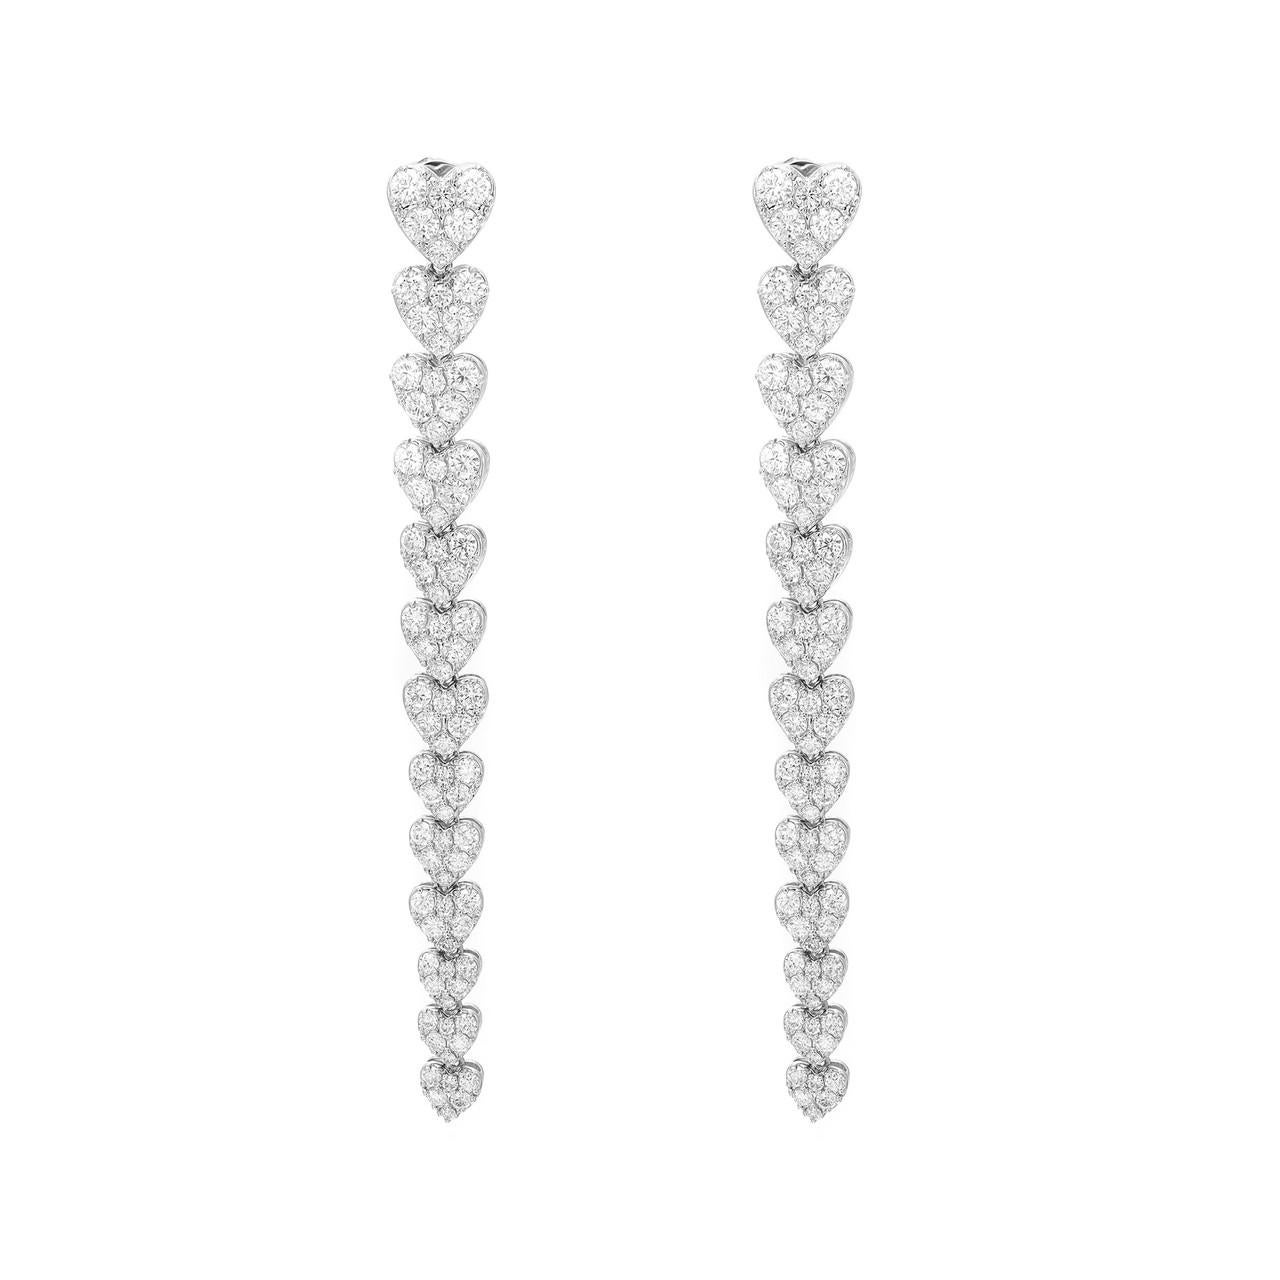 Round Cut Elizabeth Fine Jewelry 4.11 Carat Diamond Heart Drop Earrings in 18K White Gold For Sale